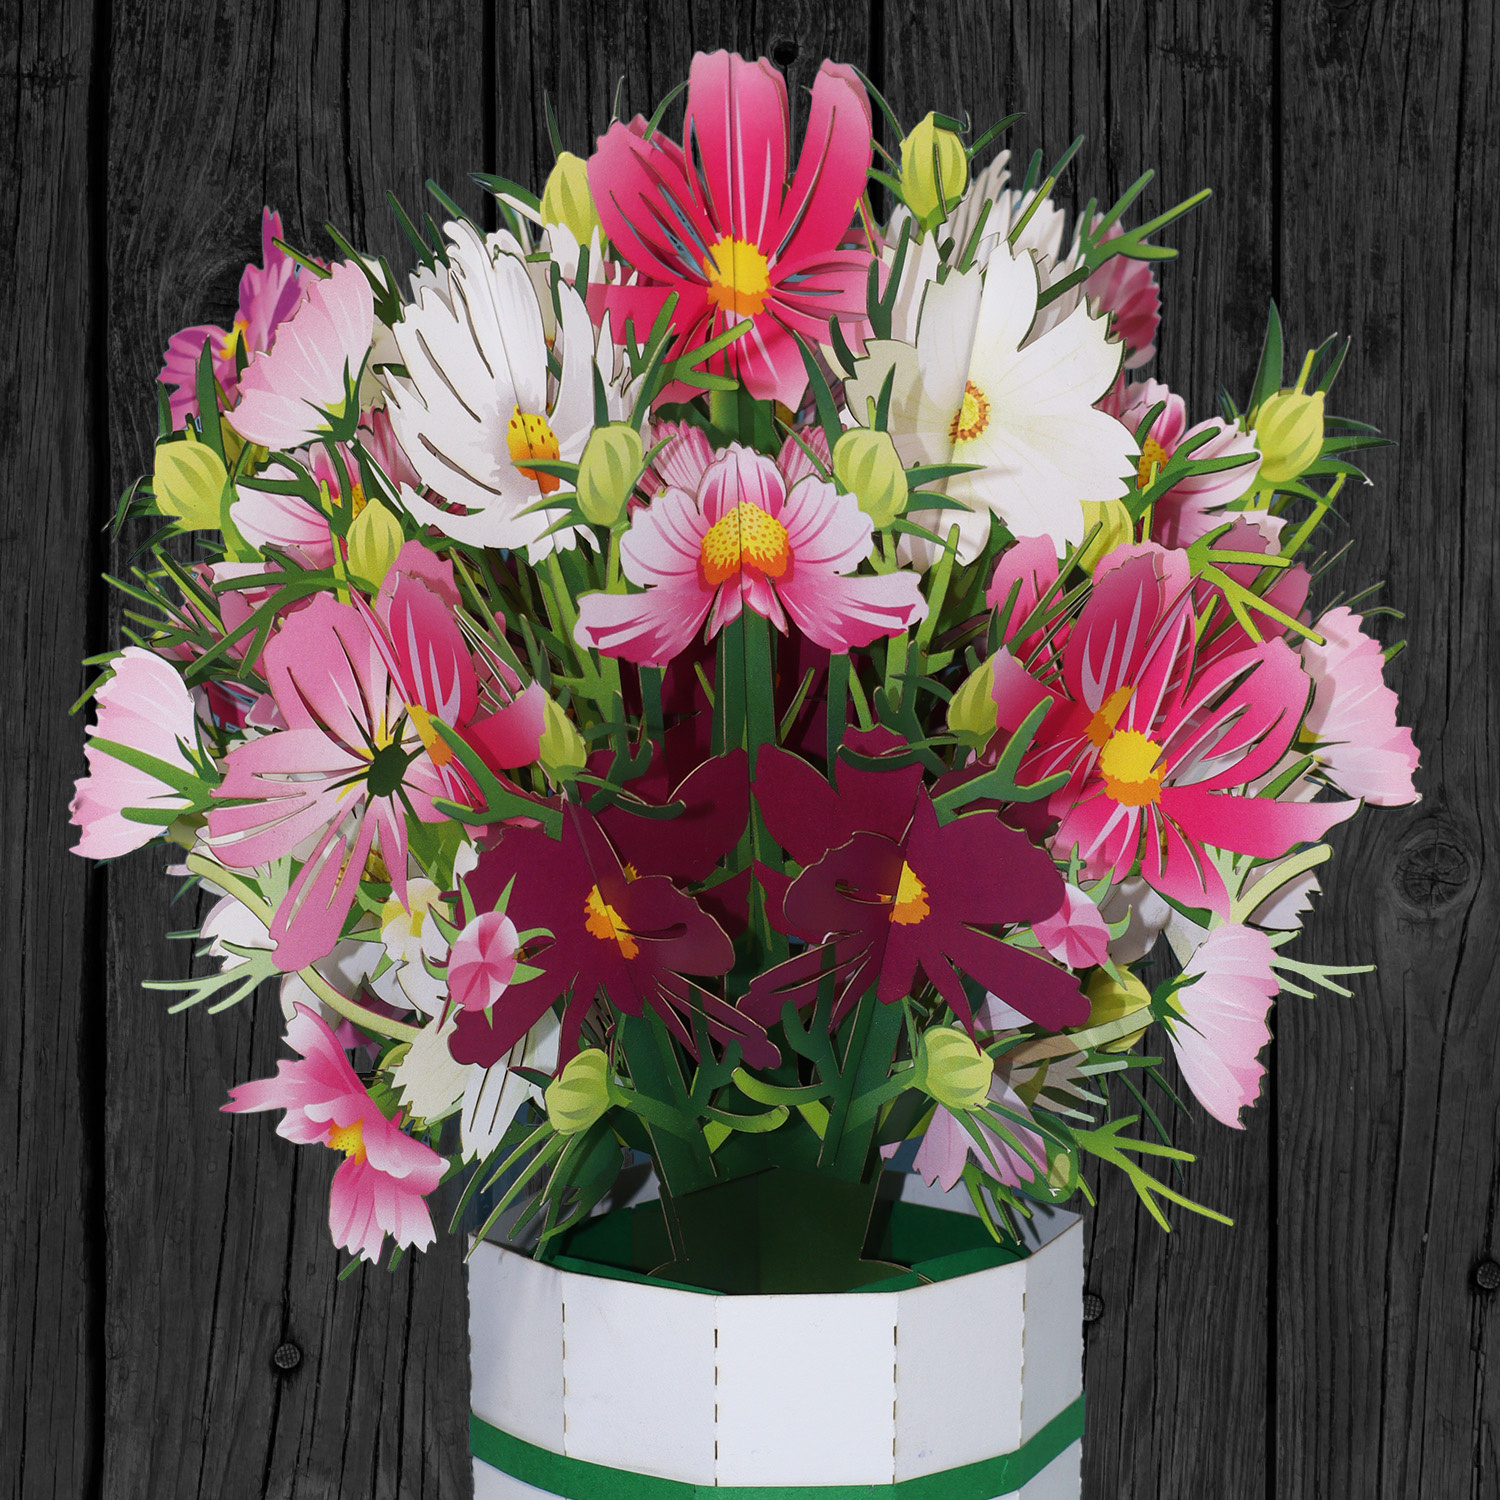 LINPOPUP LIN Pop-Up Blumenstrauß, Handgemachter Blumen inkl. Vase u. Unterteller, als Geschenk zum Geburtstag, Muttertag, Jubiläum, Gute Besserung, Danke, Papierblumenstrauß, Schmuckkörbchen, LIN17905, LINPopUp®, N803